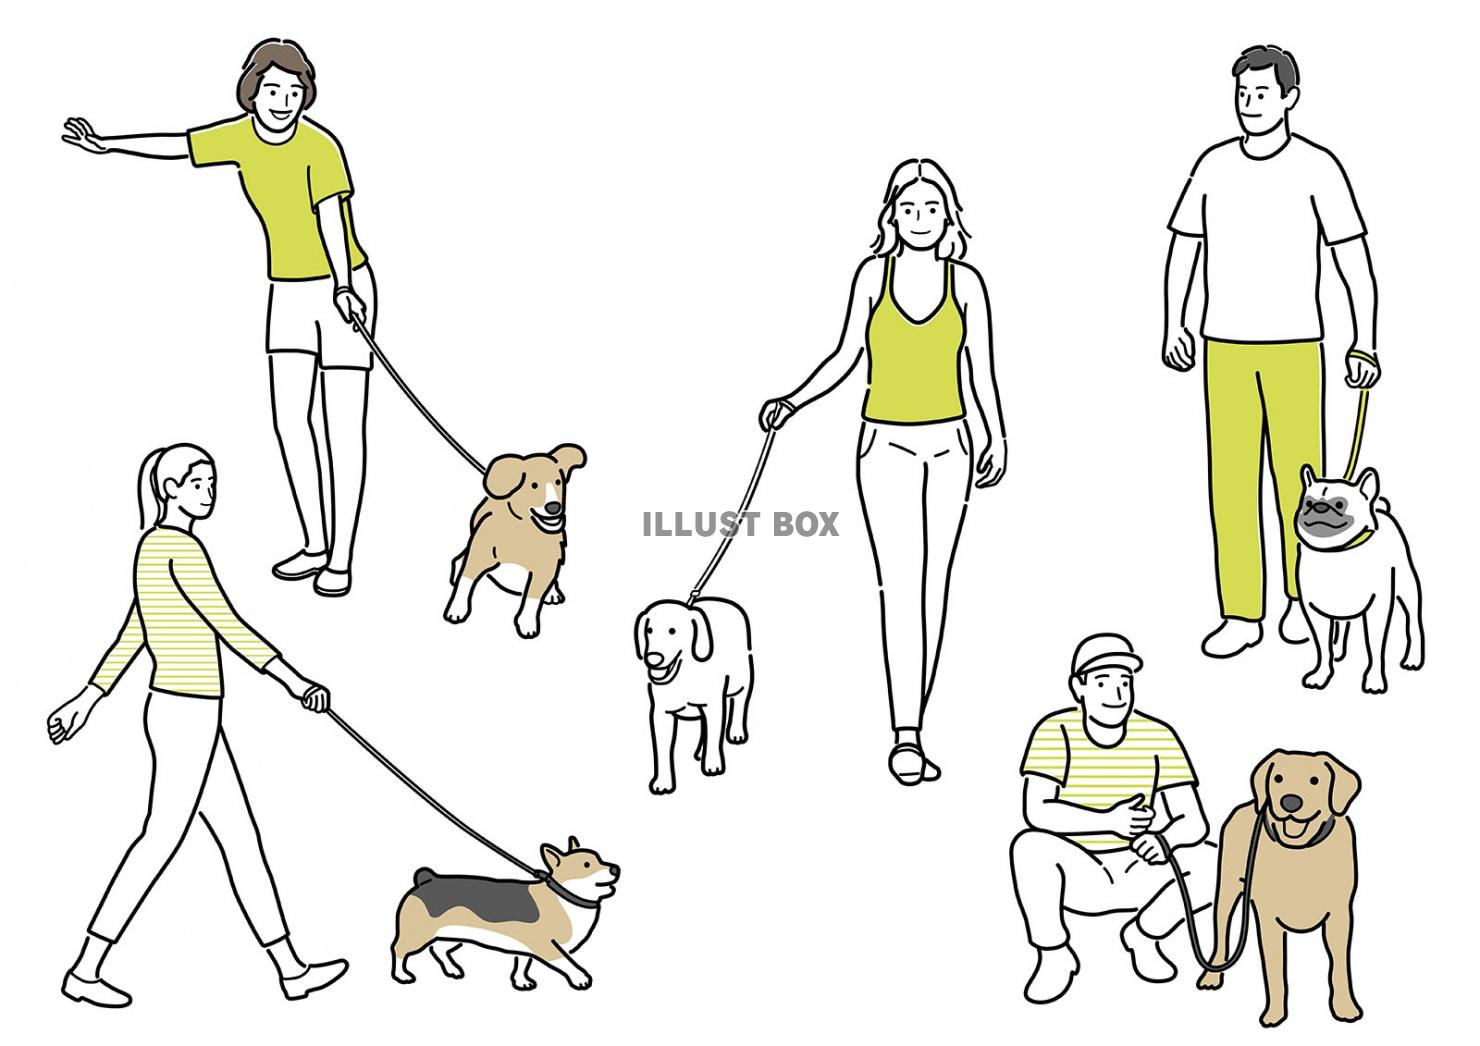 無料イラスト 犬を連れた人物のシンプルな線画イラストセット